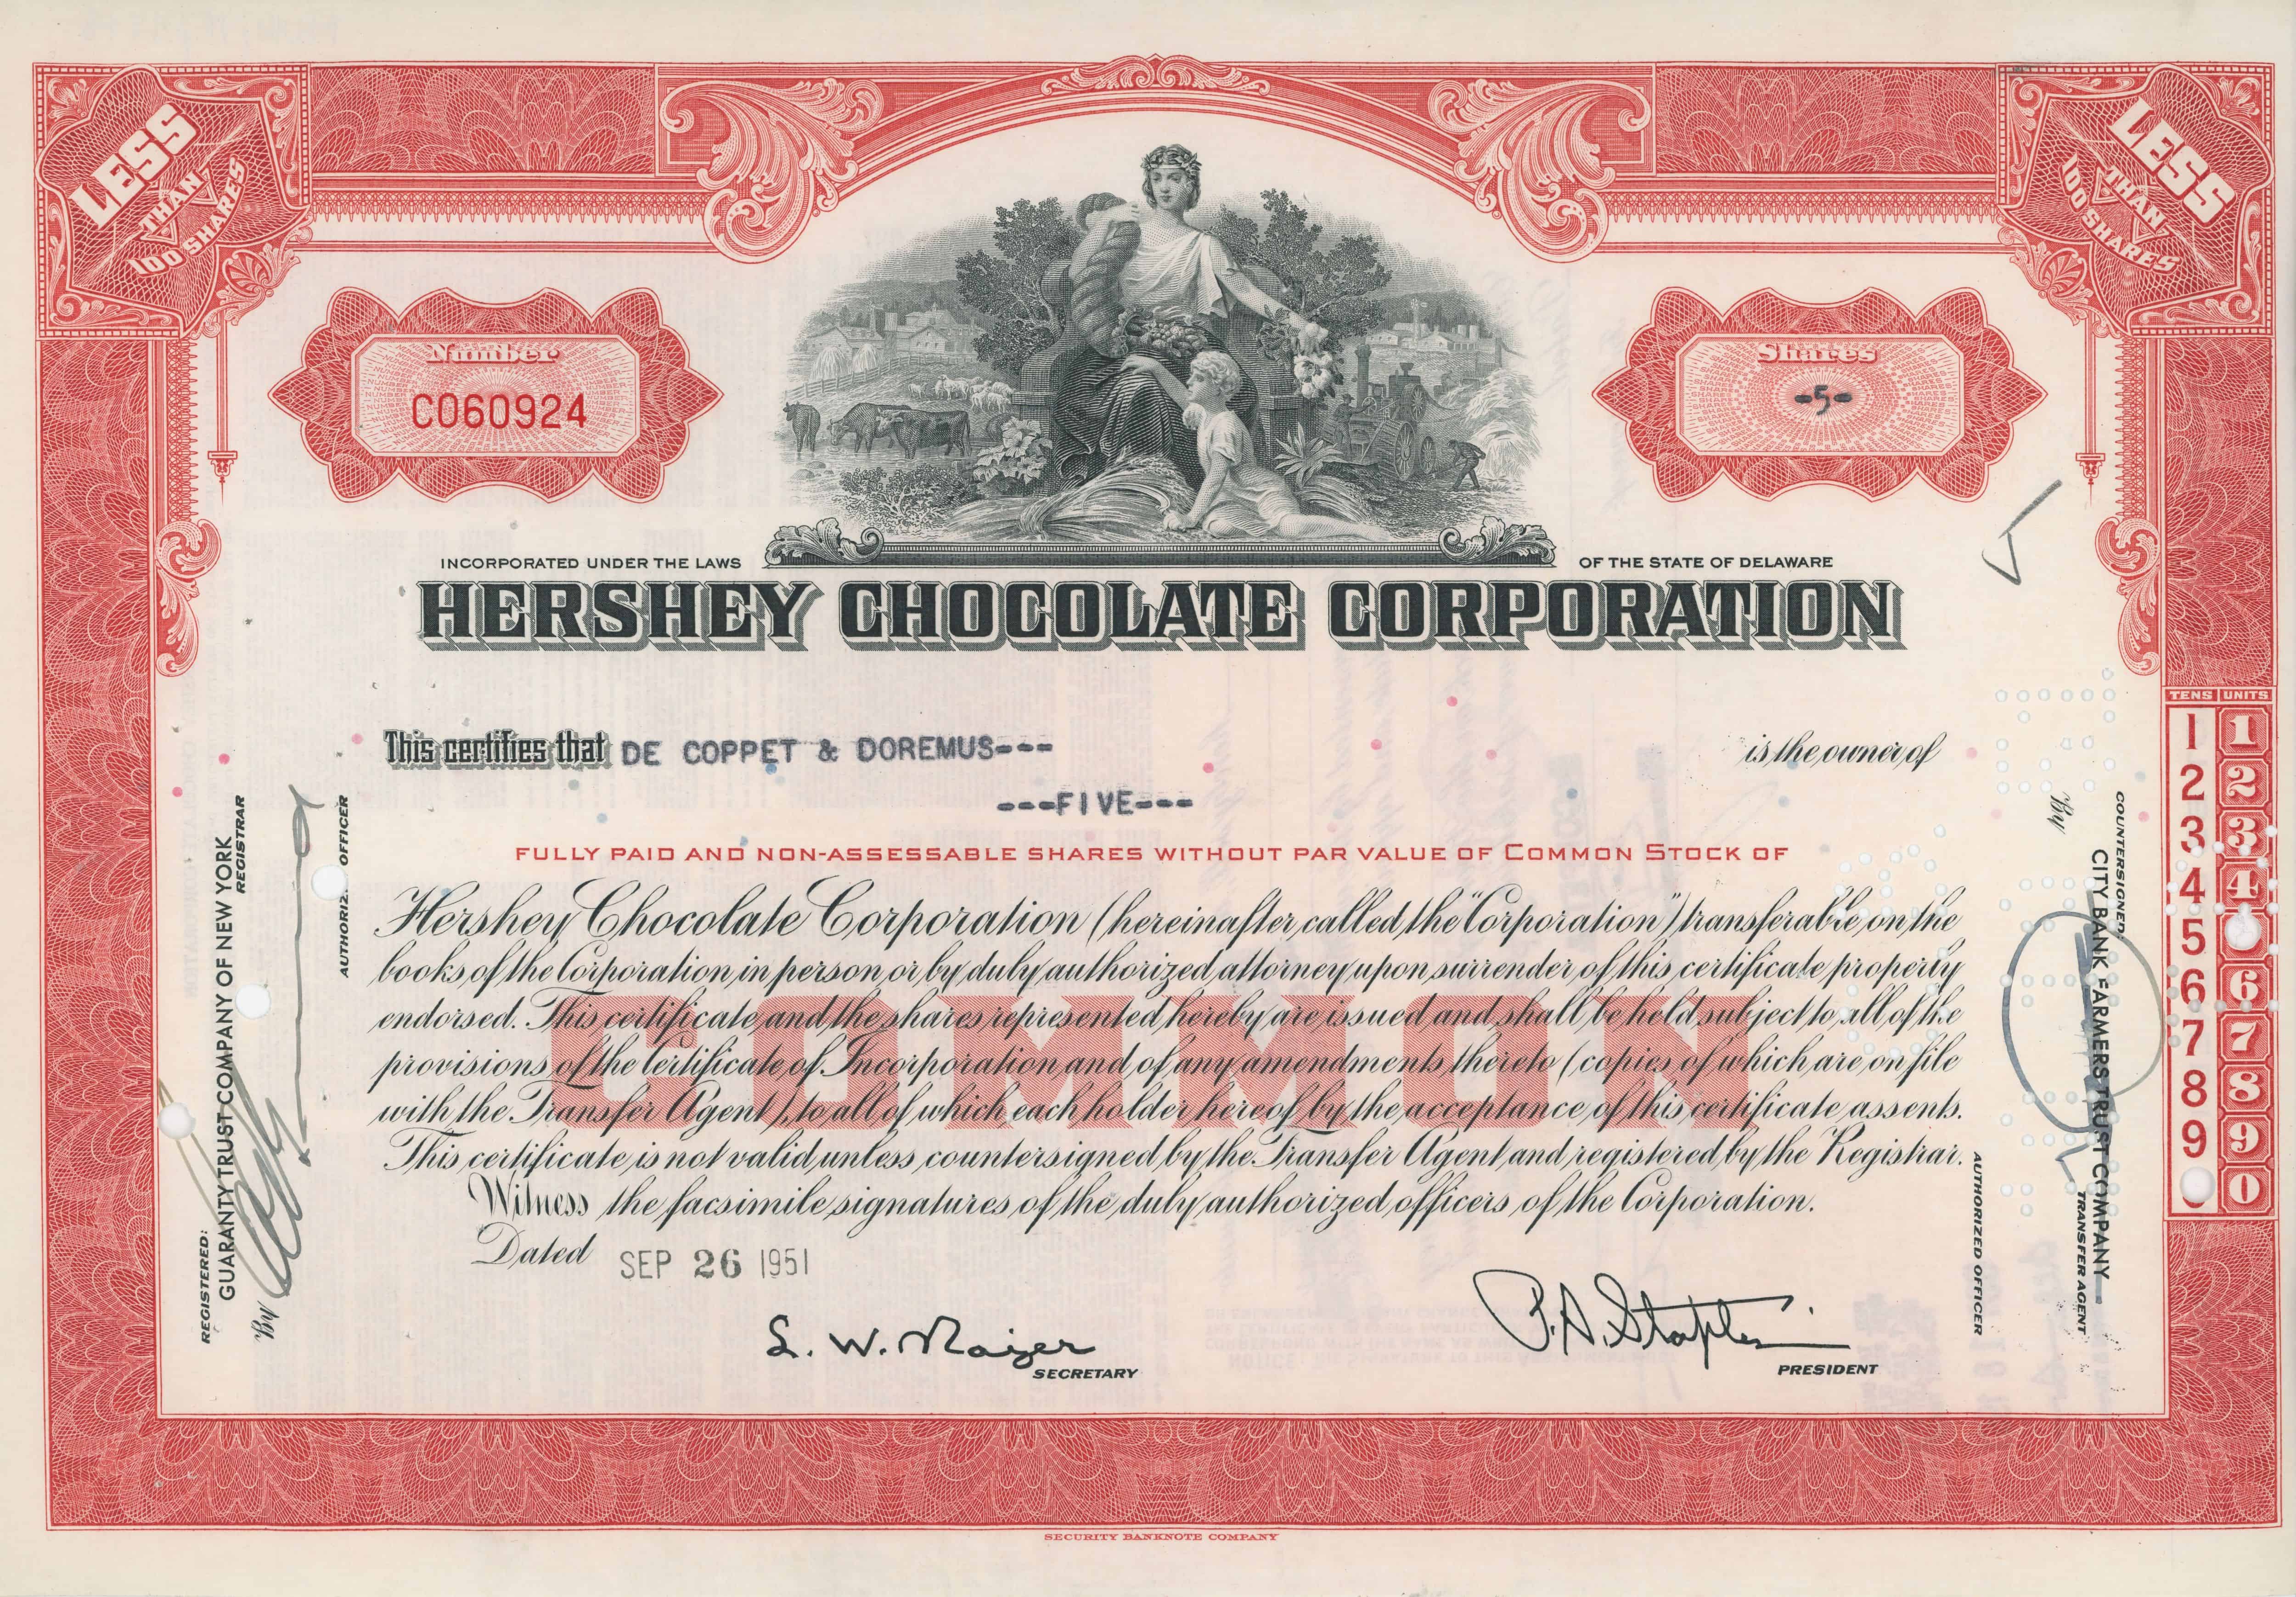 5 akcji Hershey Chocolate Corporation z 26 września 1951 roku